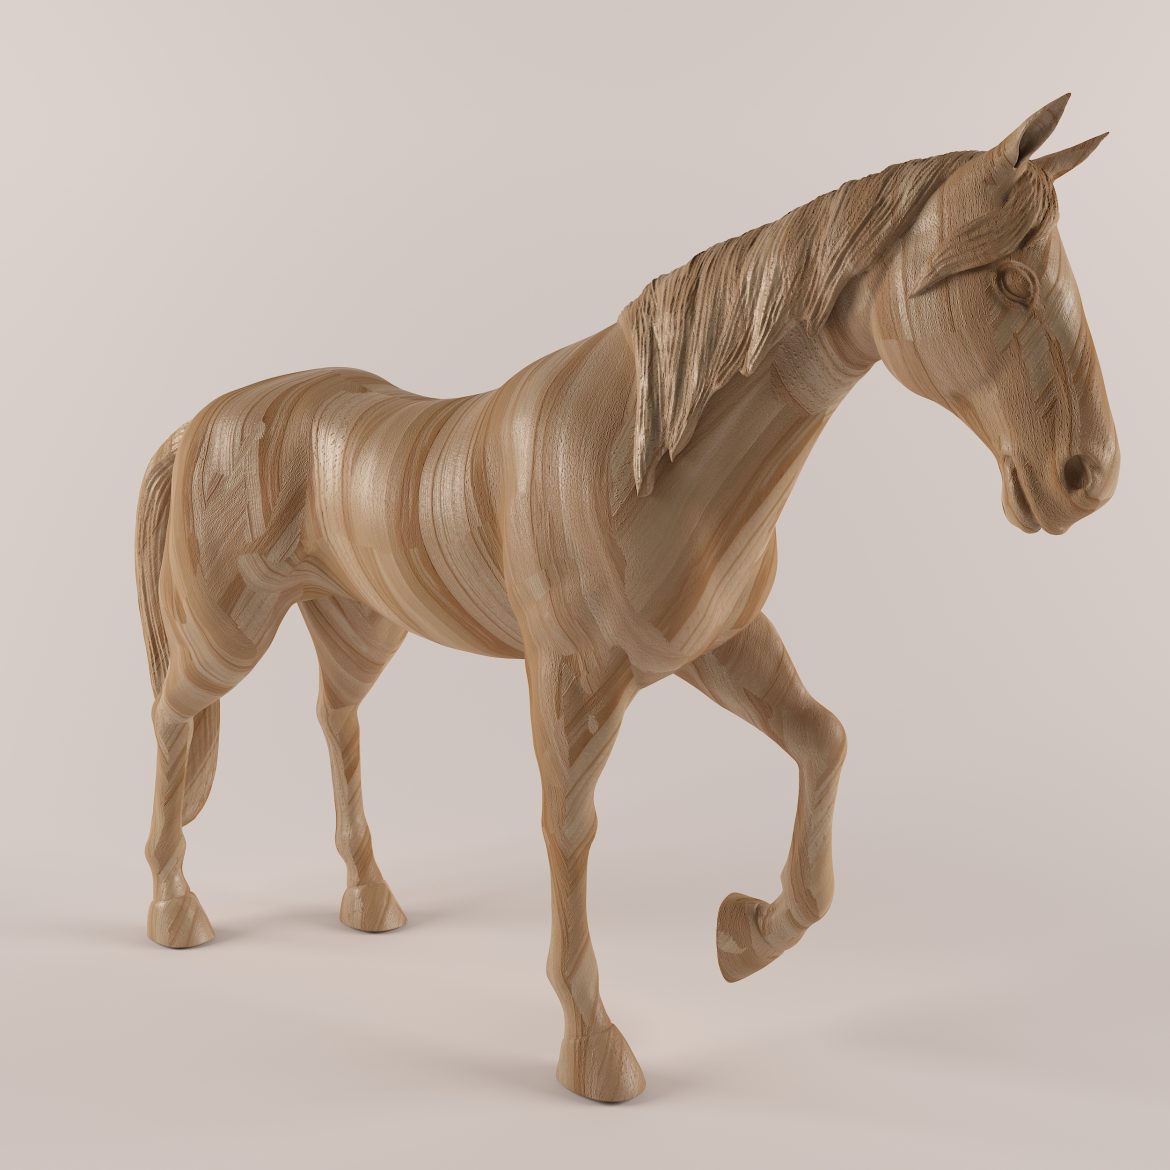 wooden horse-43 3d model max obj 297568